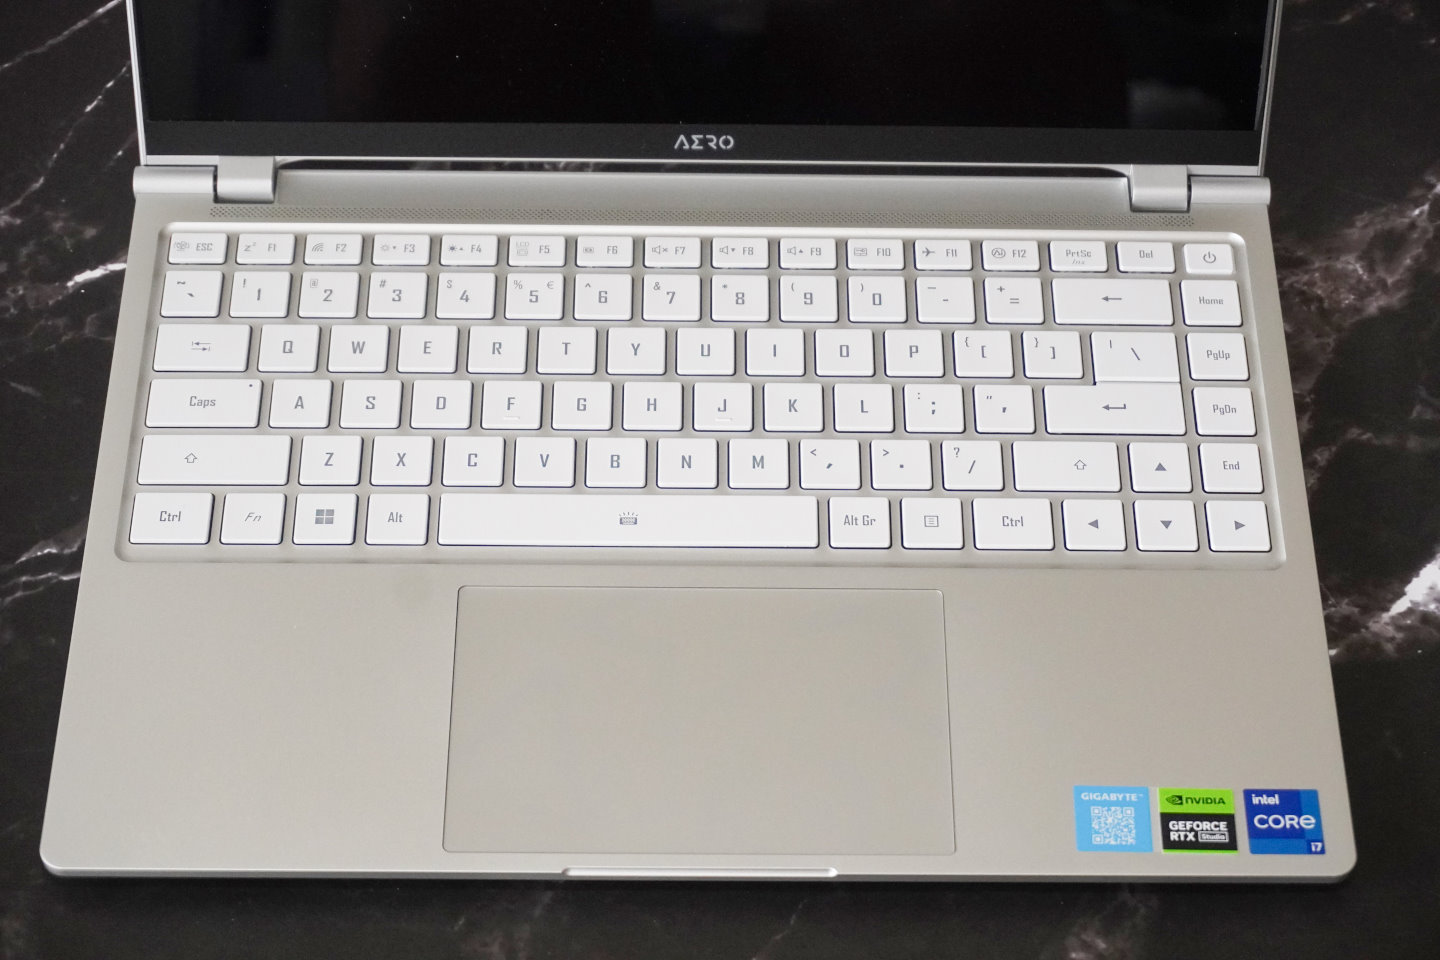 AERO 14 OLED的鍵盤布局相當規舉，並具有白色背光功能，比較可惜的是並沒有整合指紋辨功能。